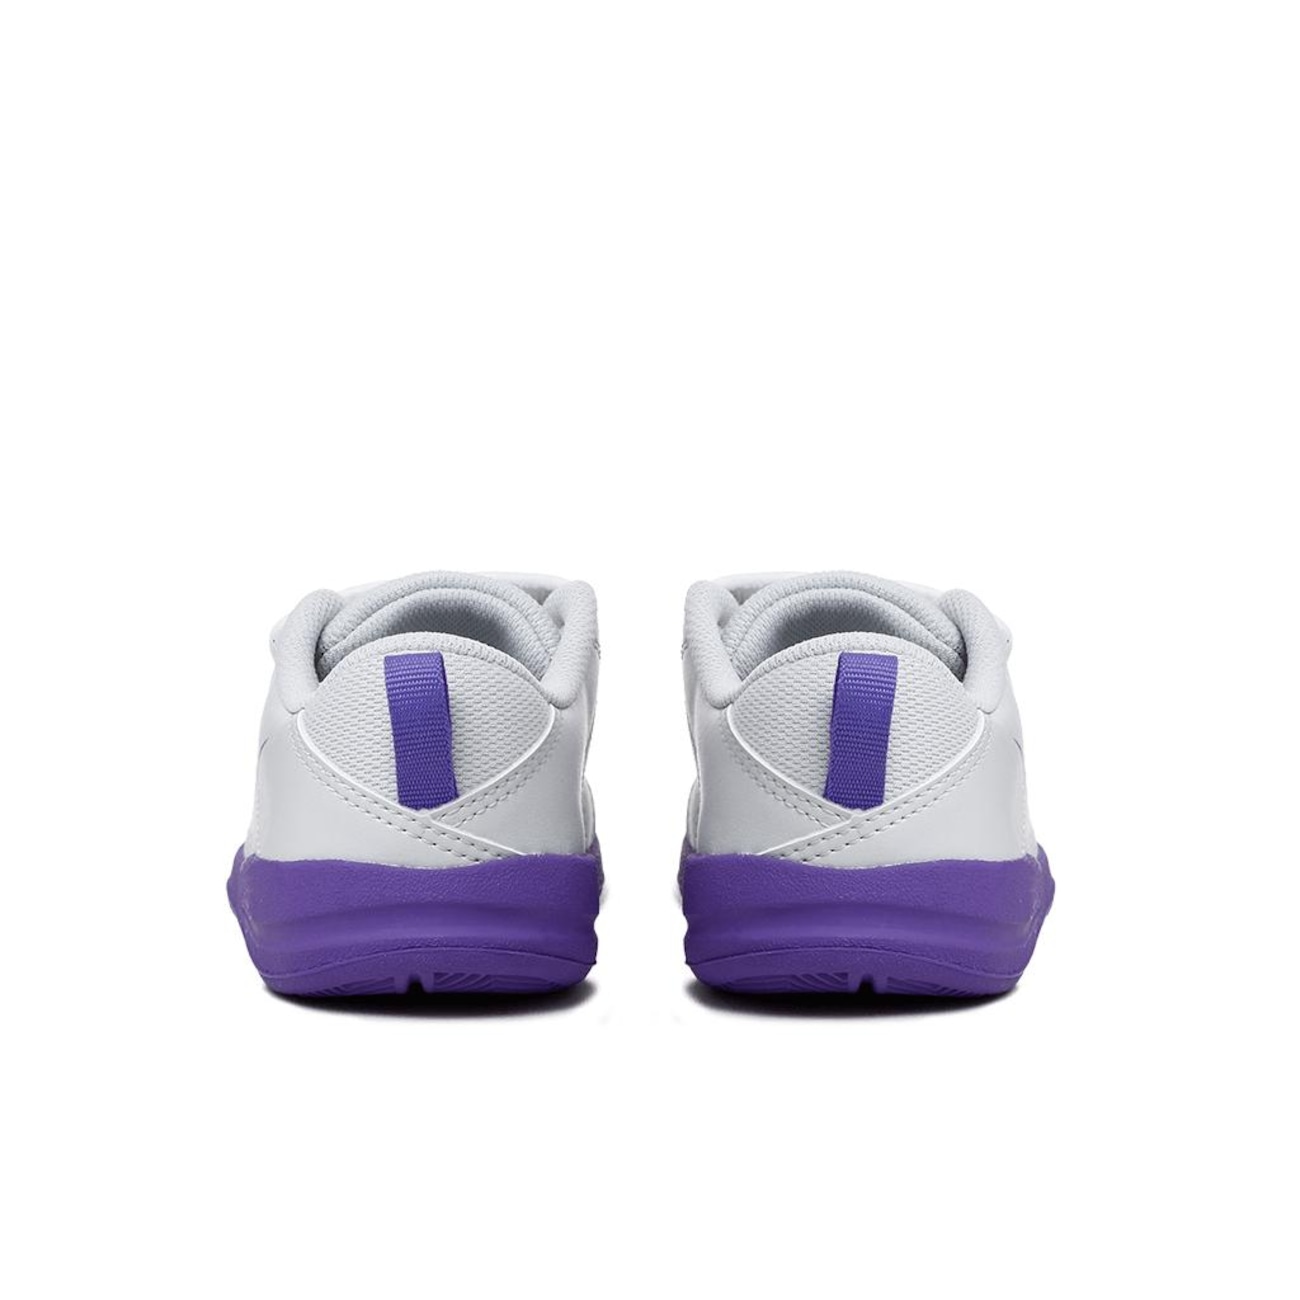 Tênis Nike Pico LT Infantil - Foto 5